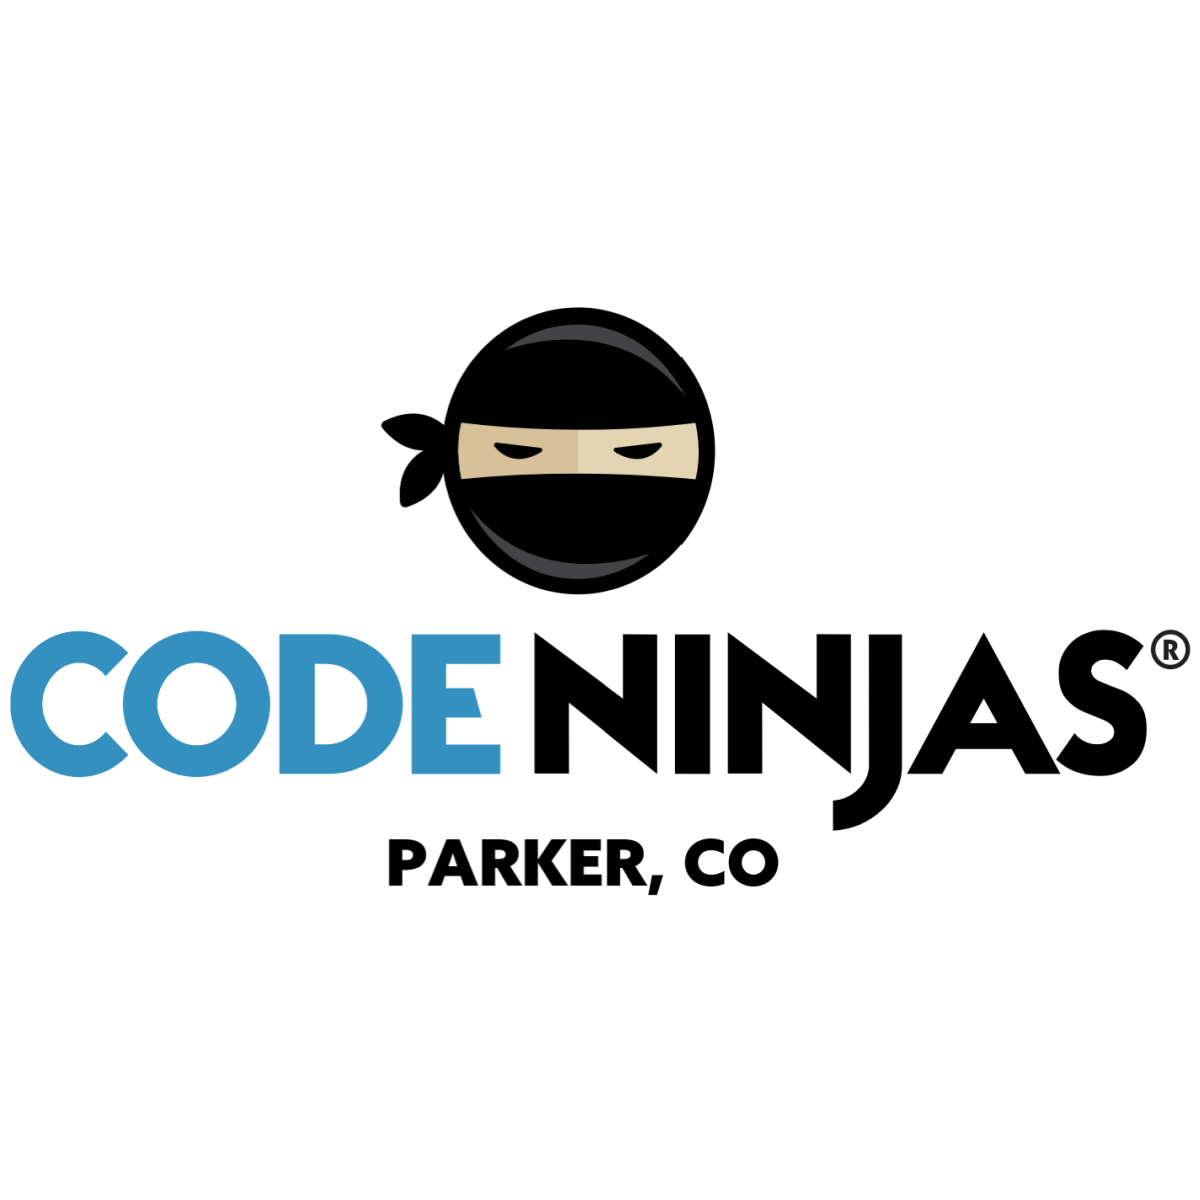 Code Ninjas Parker logo